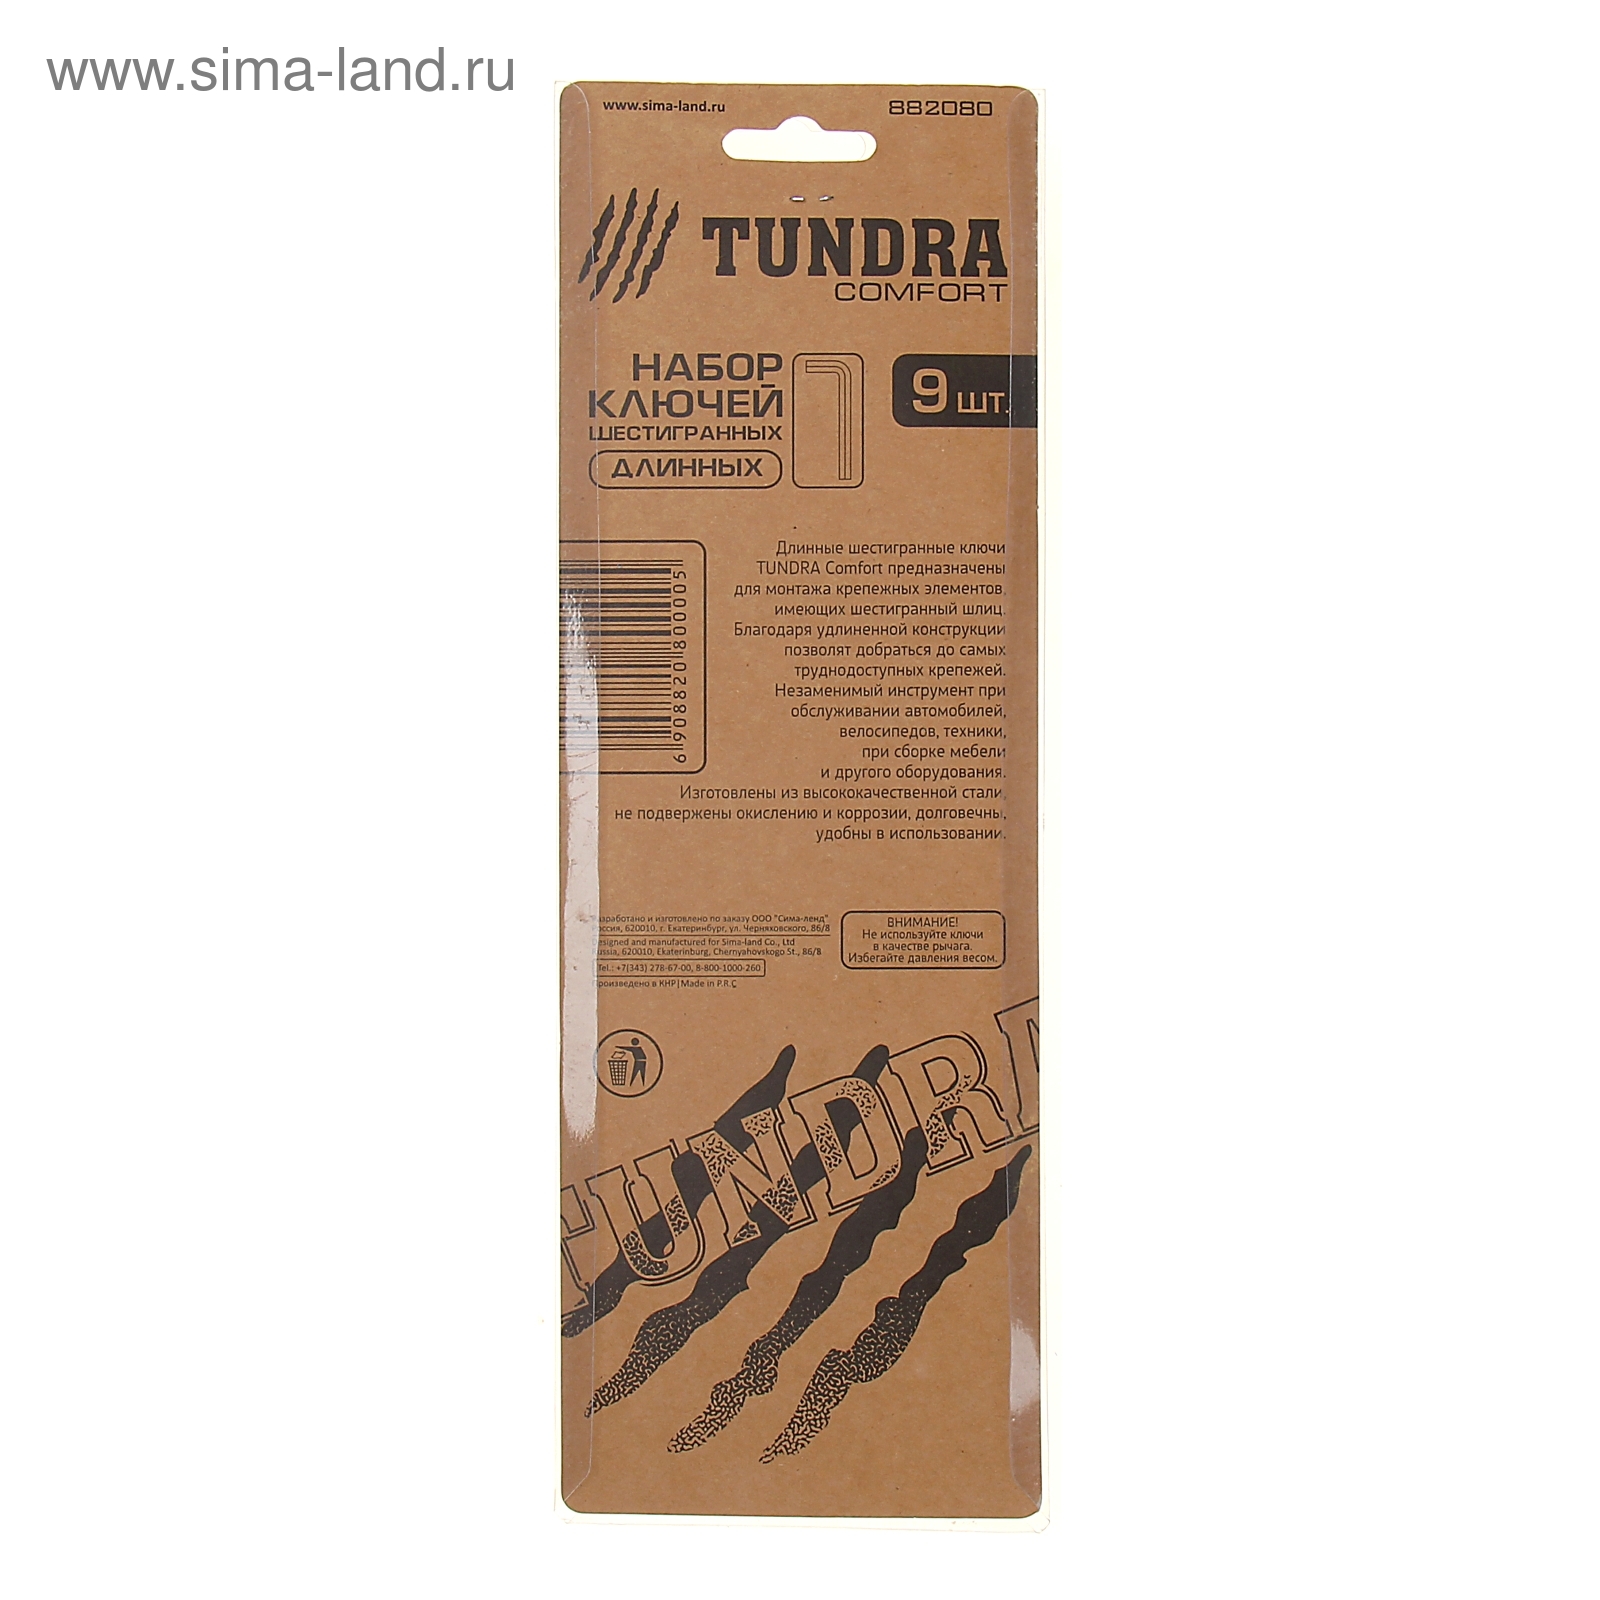 Набор ключей шестигранников TUNDRA comfort, 1.5 - 10 мм 9 штук, длинные